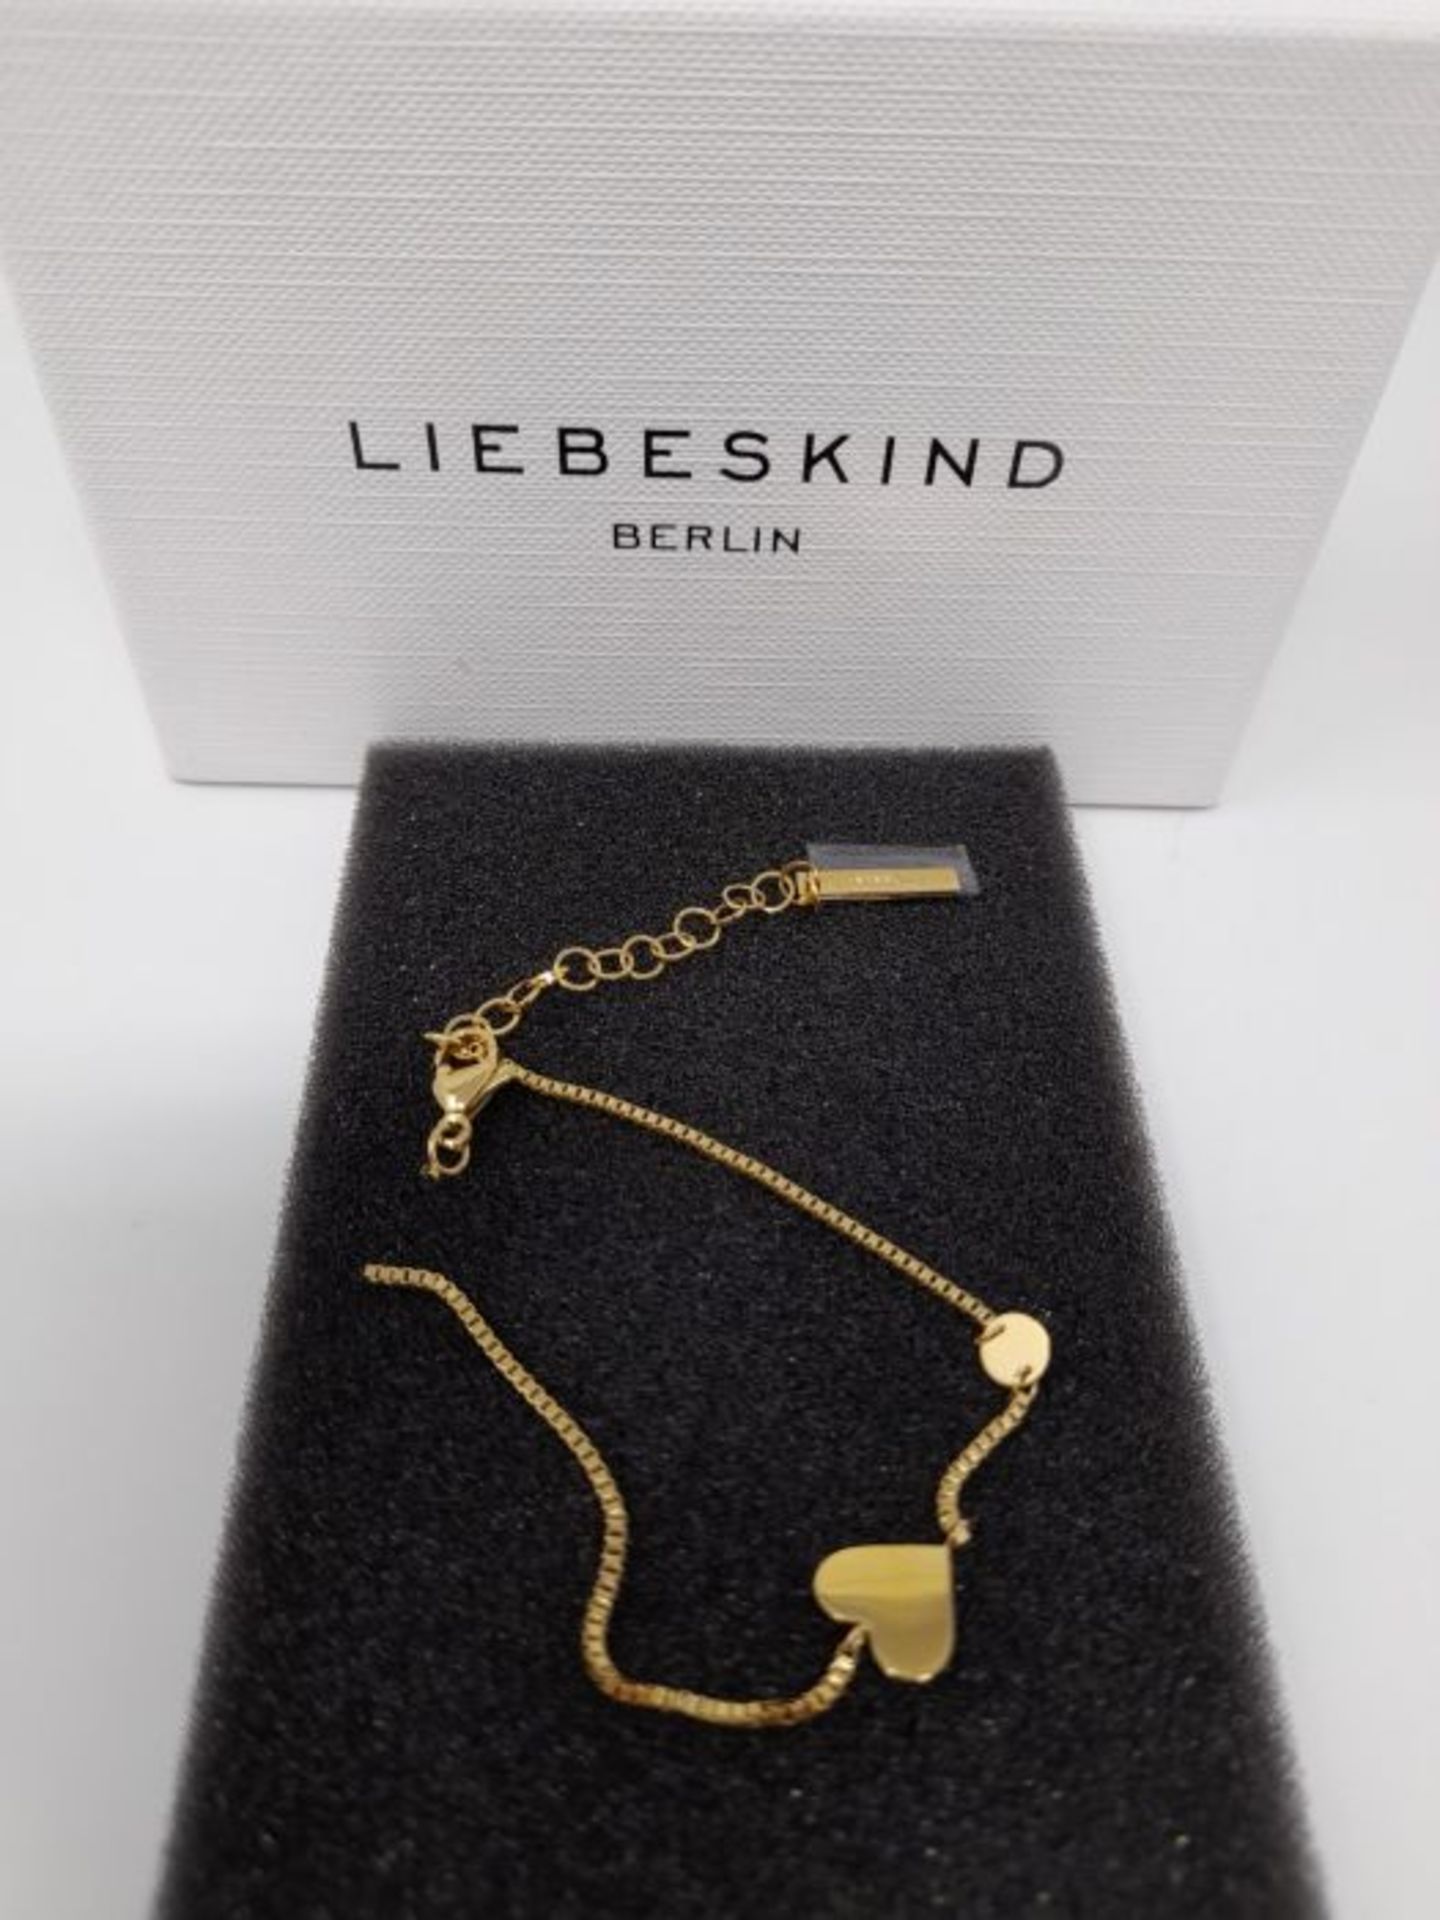 [CRACKED] Liebeskind LJ-0510-B-20 Damen Armband Herz Edelstahl Gold 20 cm - Image 3 of 3